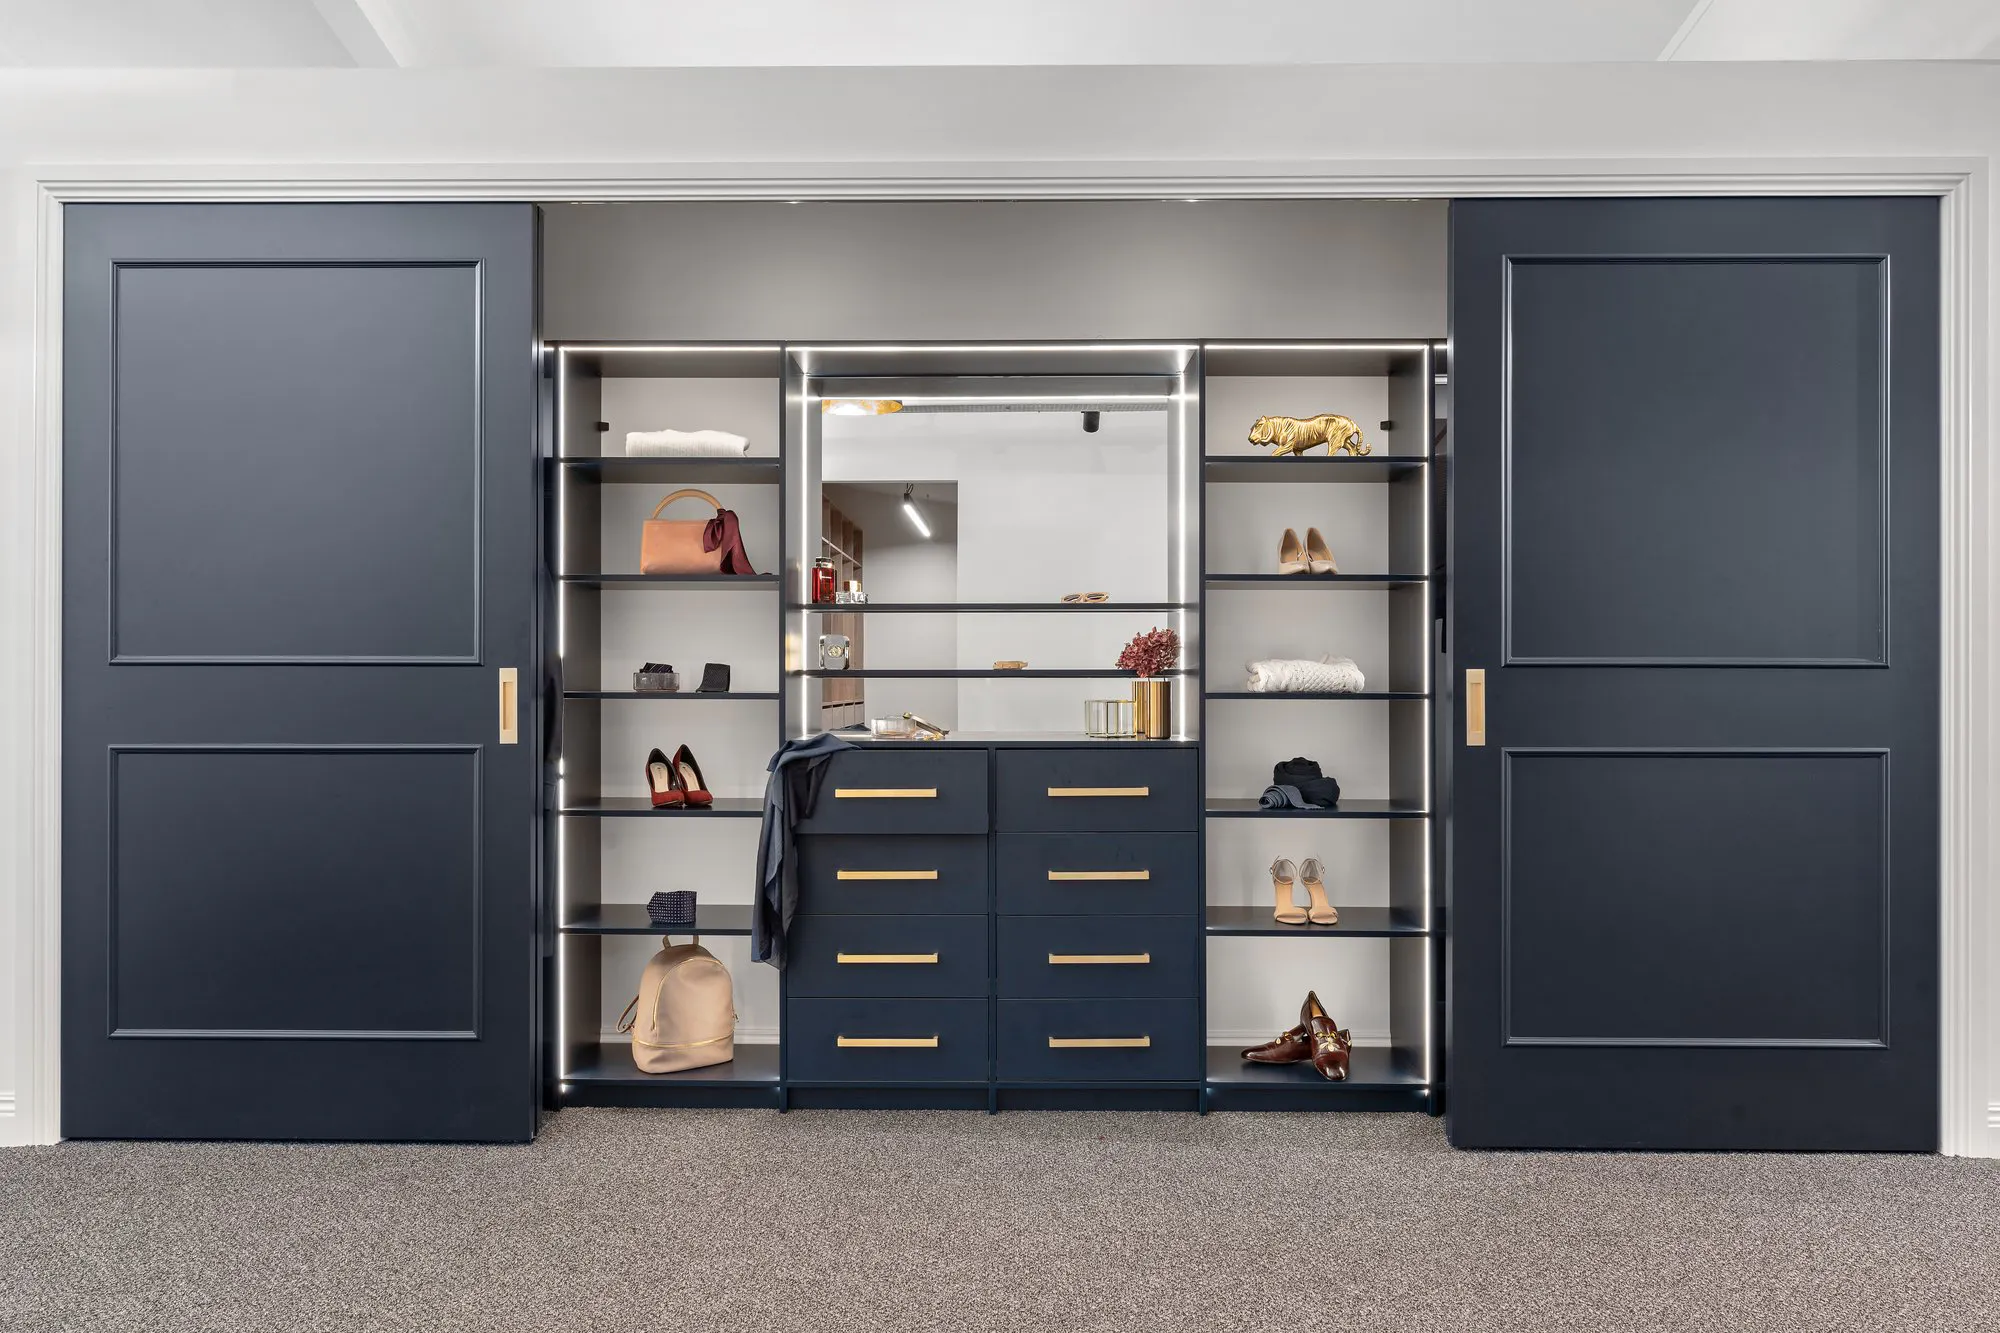 Villa sliding wardrobe doors and Flex reach-in wardrobe in blue